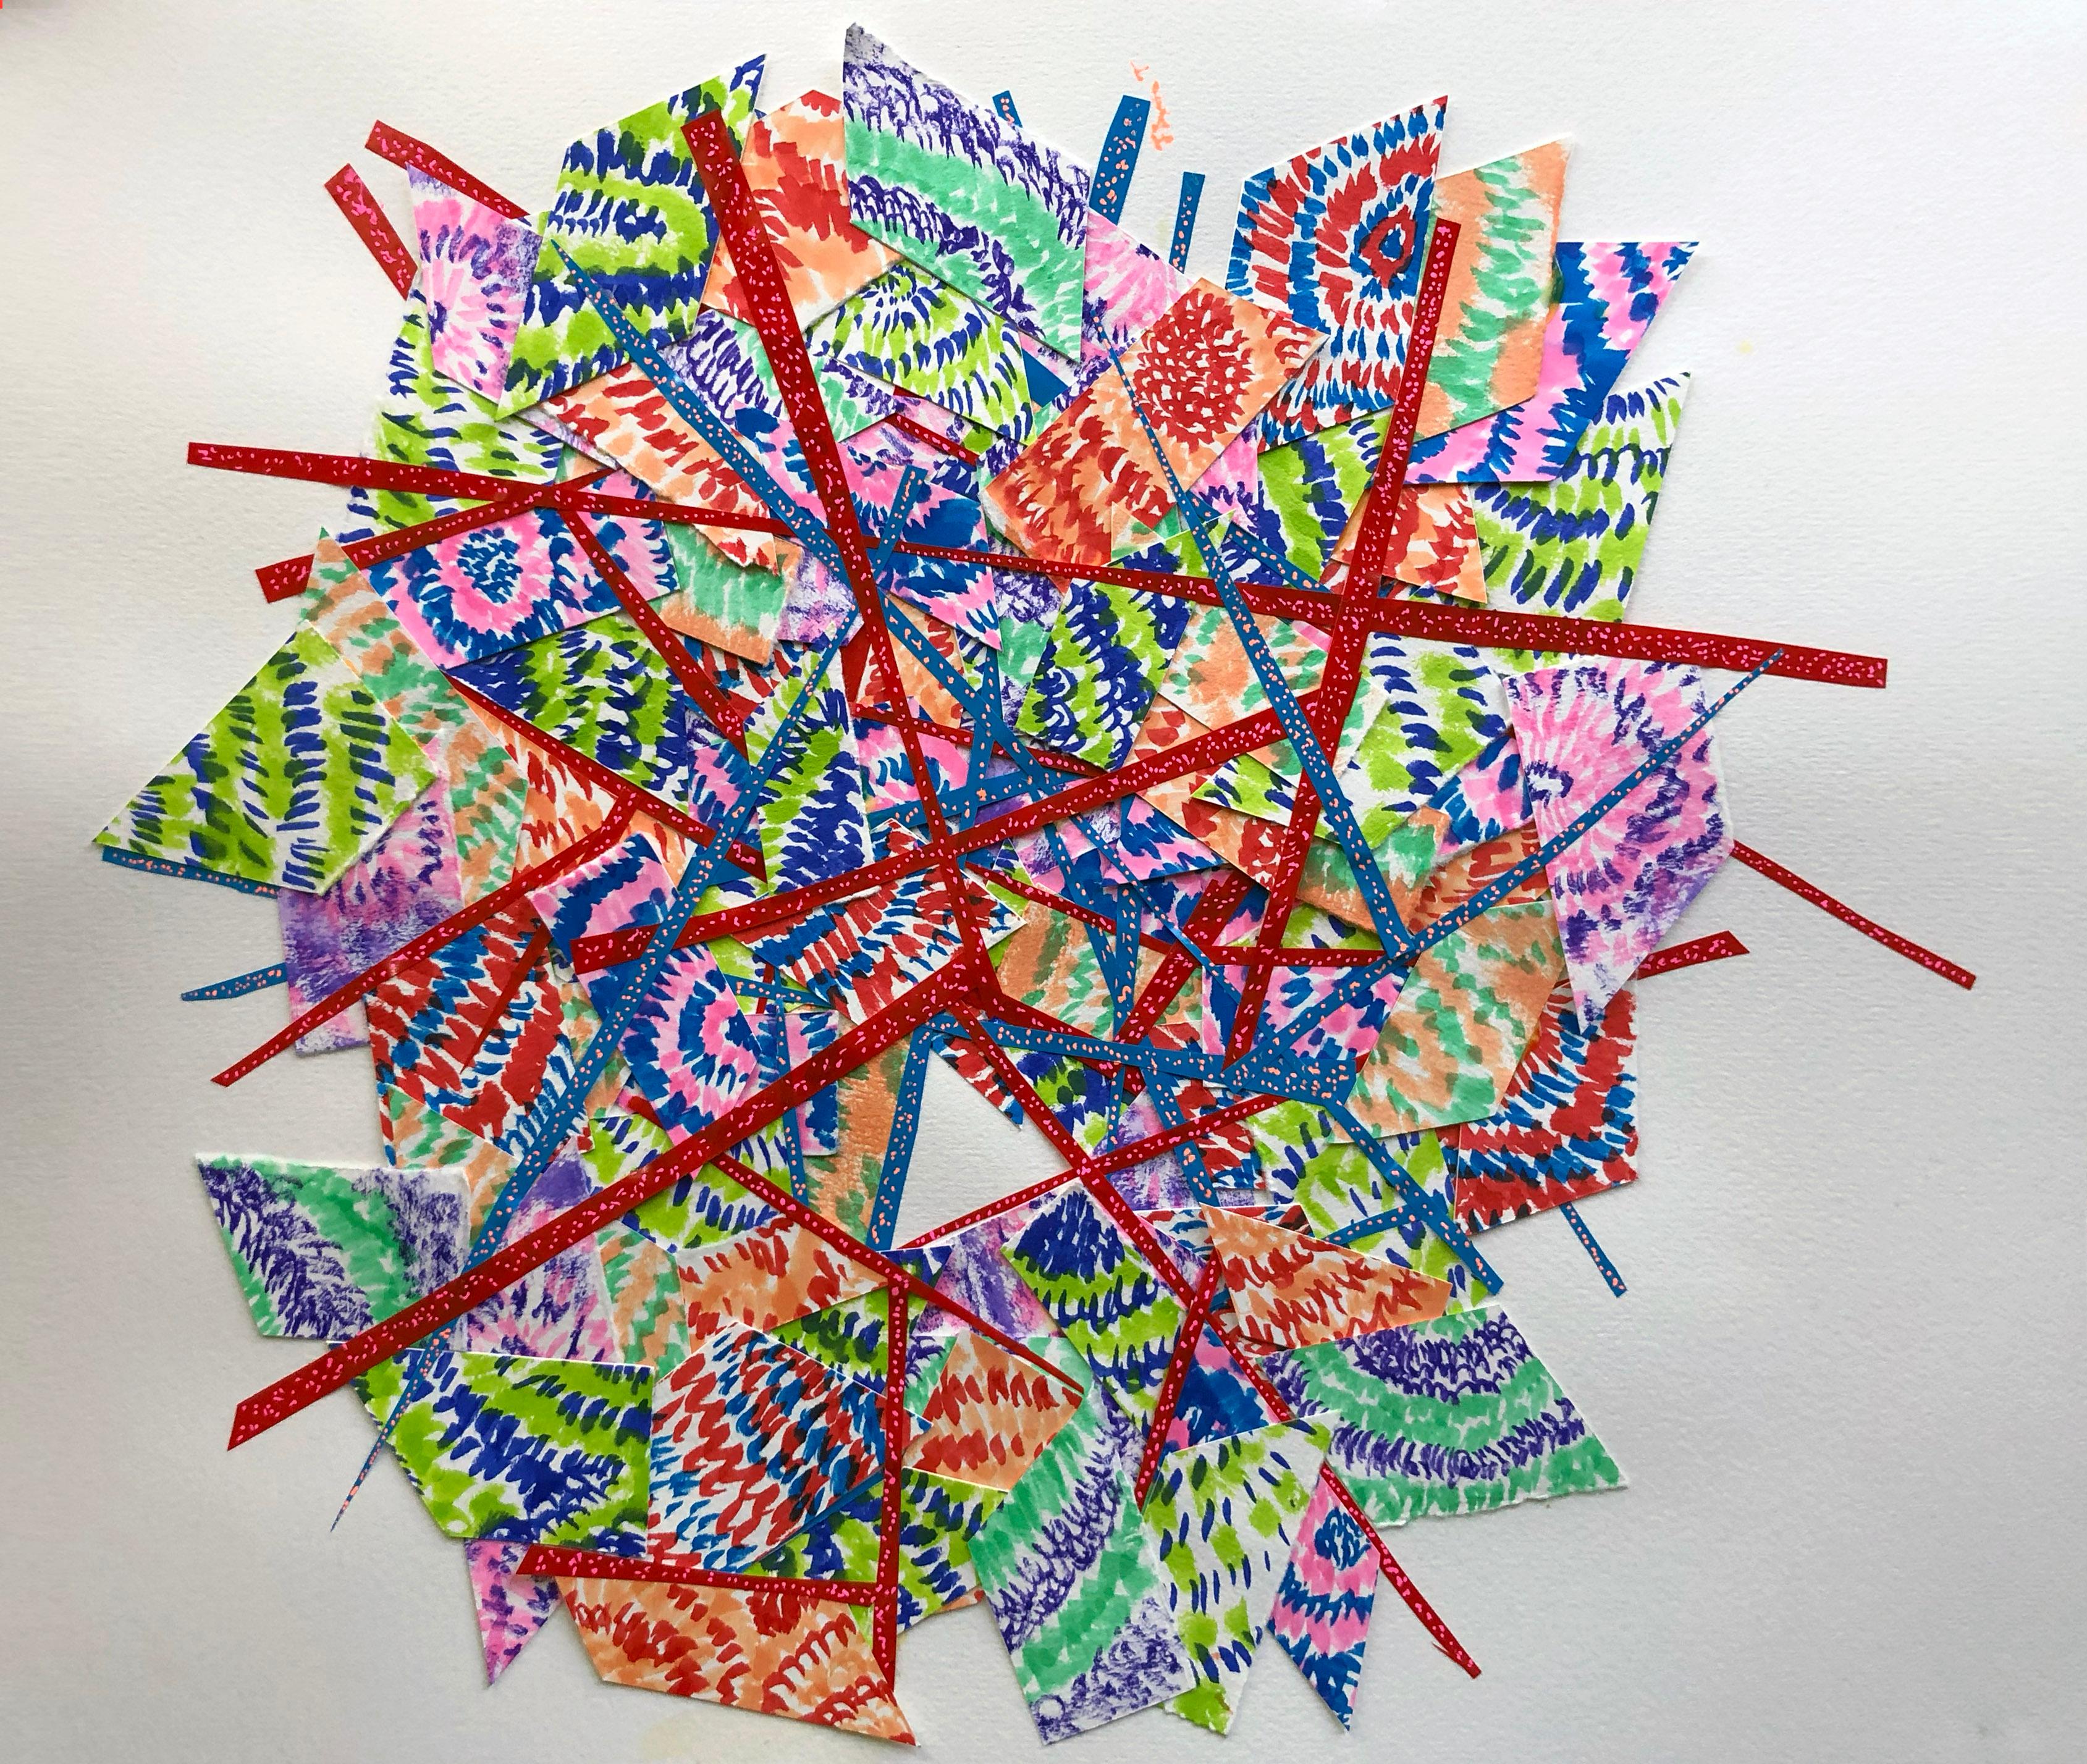 Winslow Tee Abstract Drawing – Abstraktes Collage-Gemälde in verschiedenen Medien, zeitgenössisches rot-blau-grünes Muster 